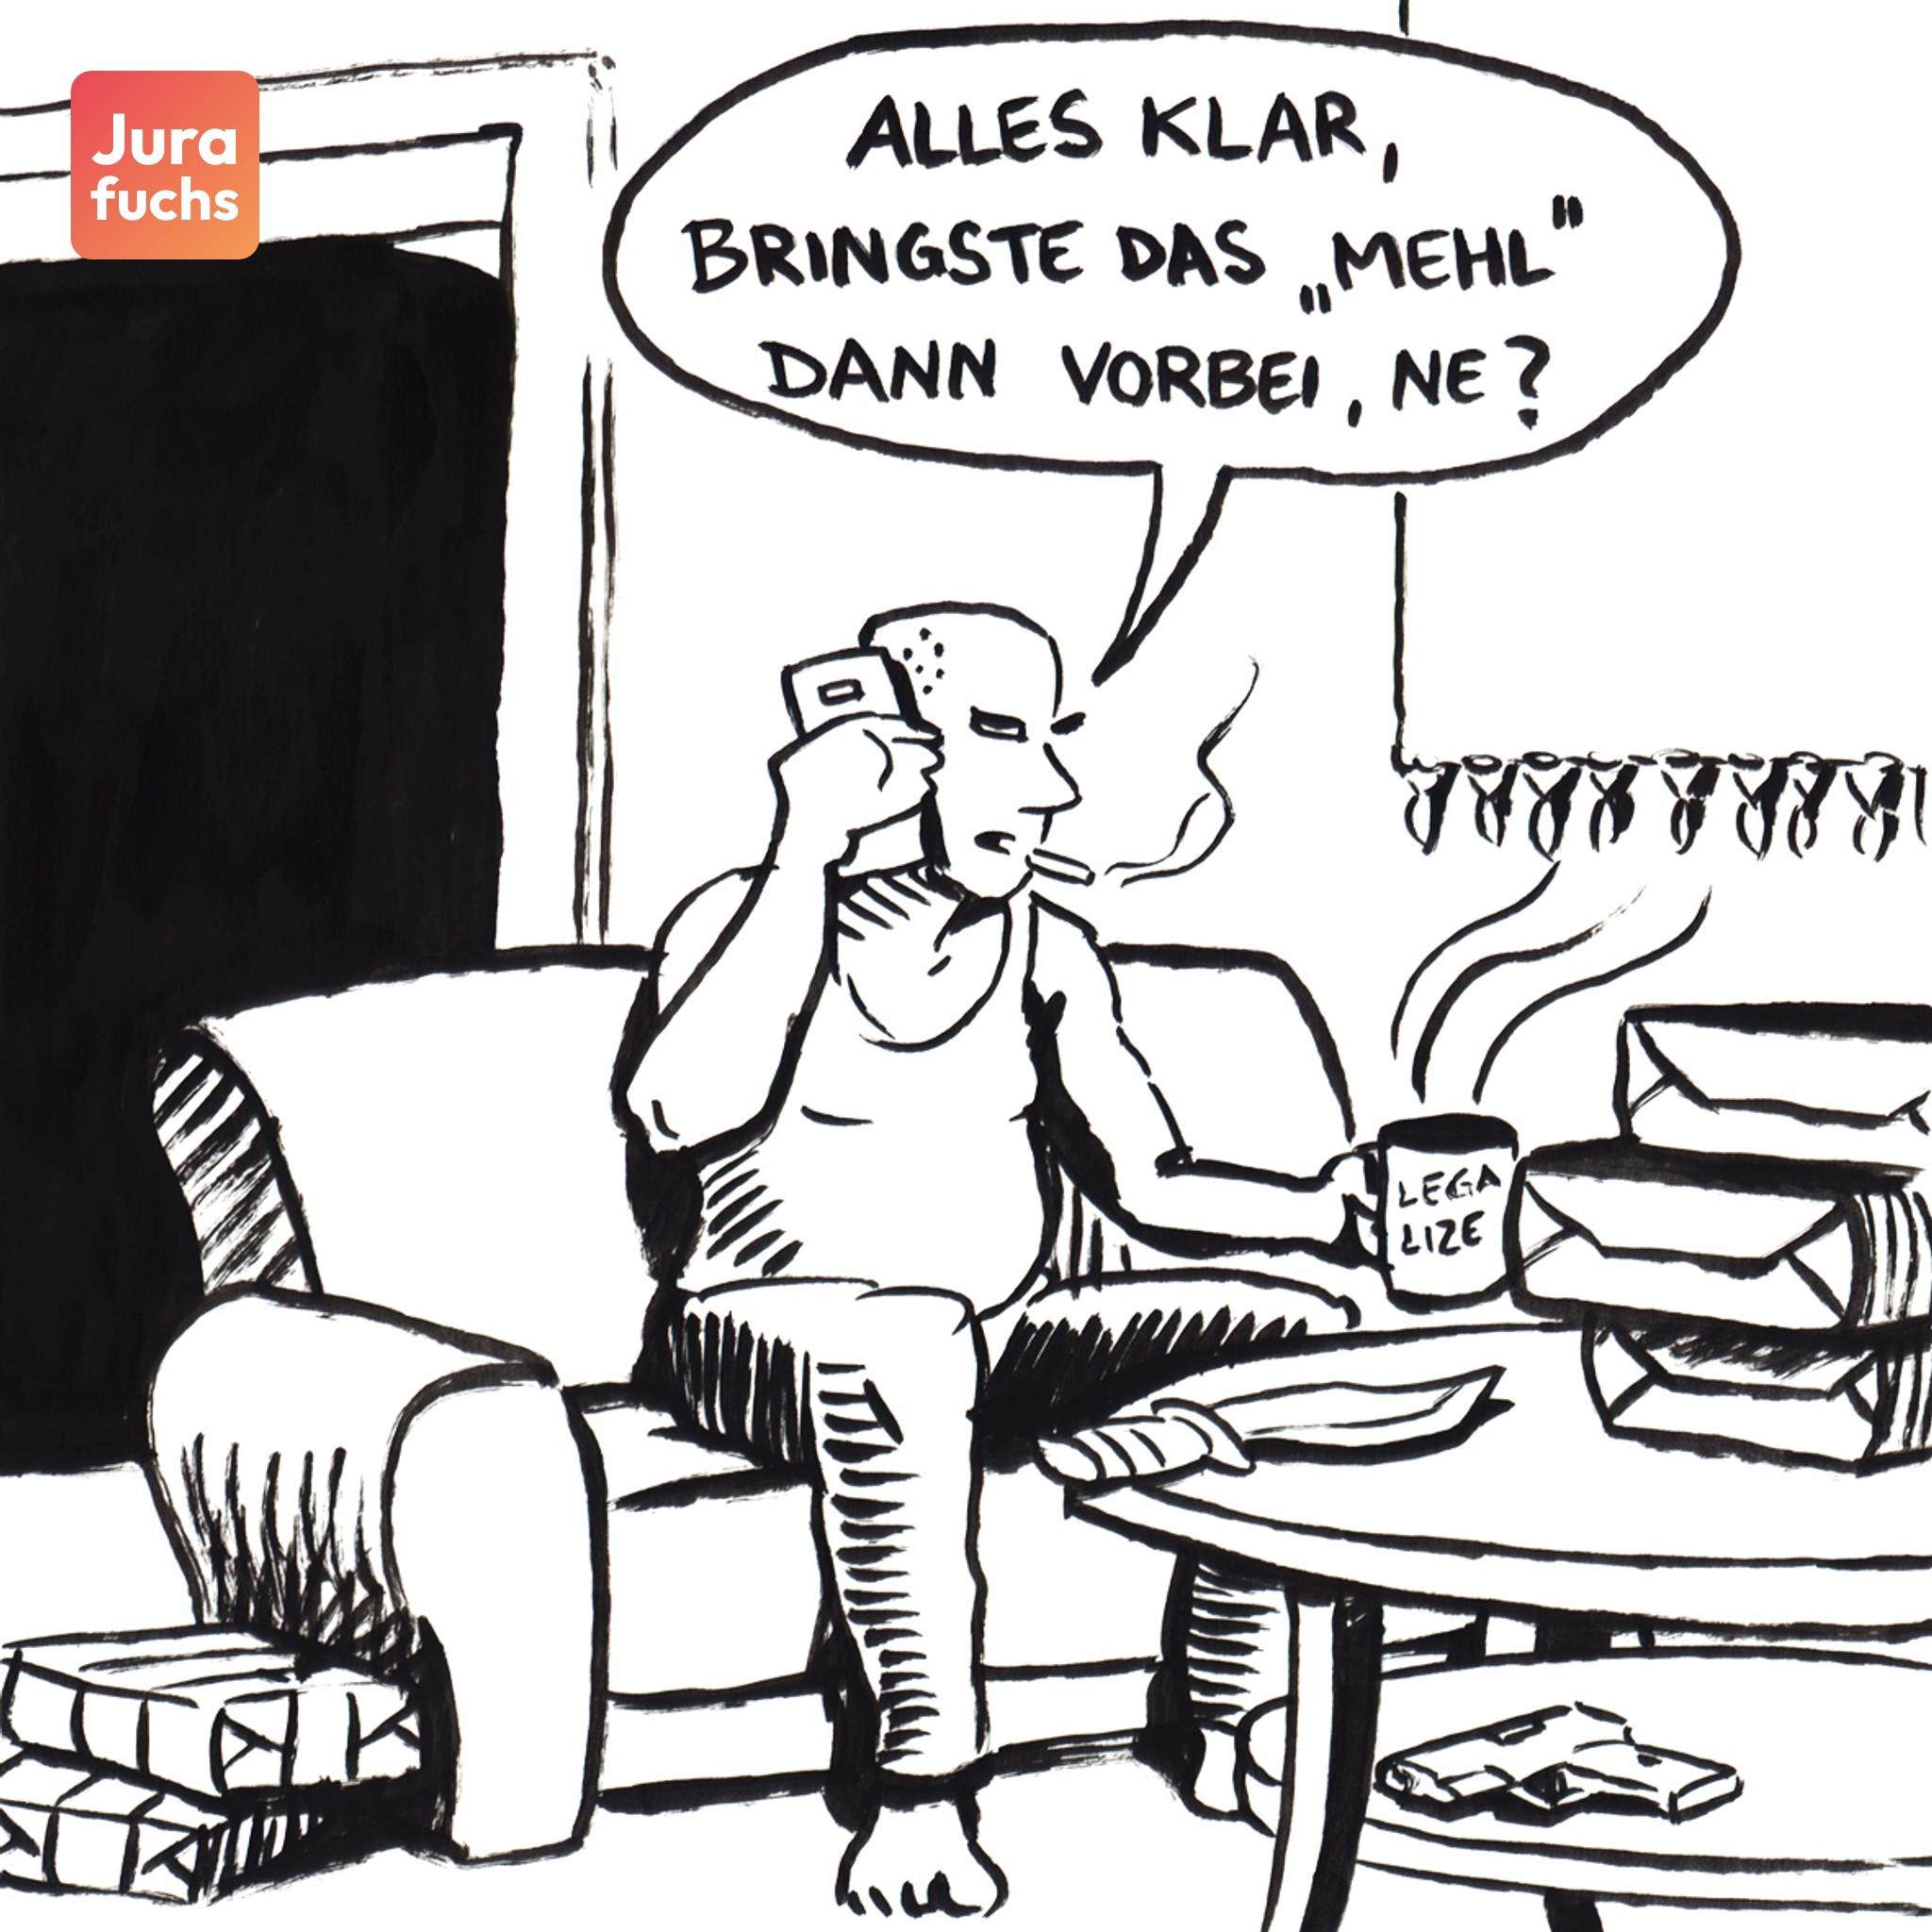 Jurafuchs Illustration: Drogenhändler T sitzt in seiner Wohnung, in der sich Drogen und Waffen befinden. 